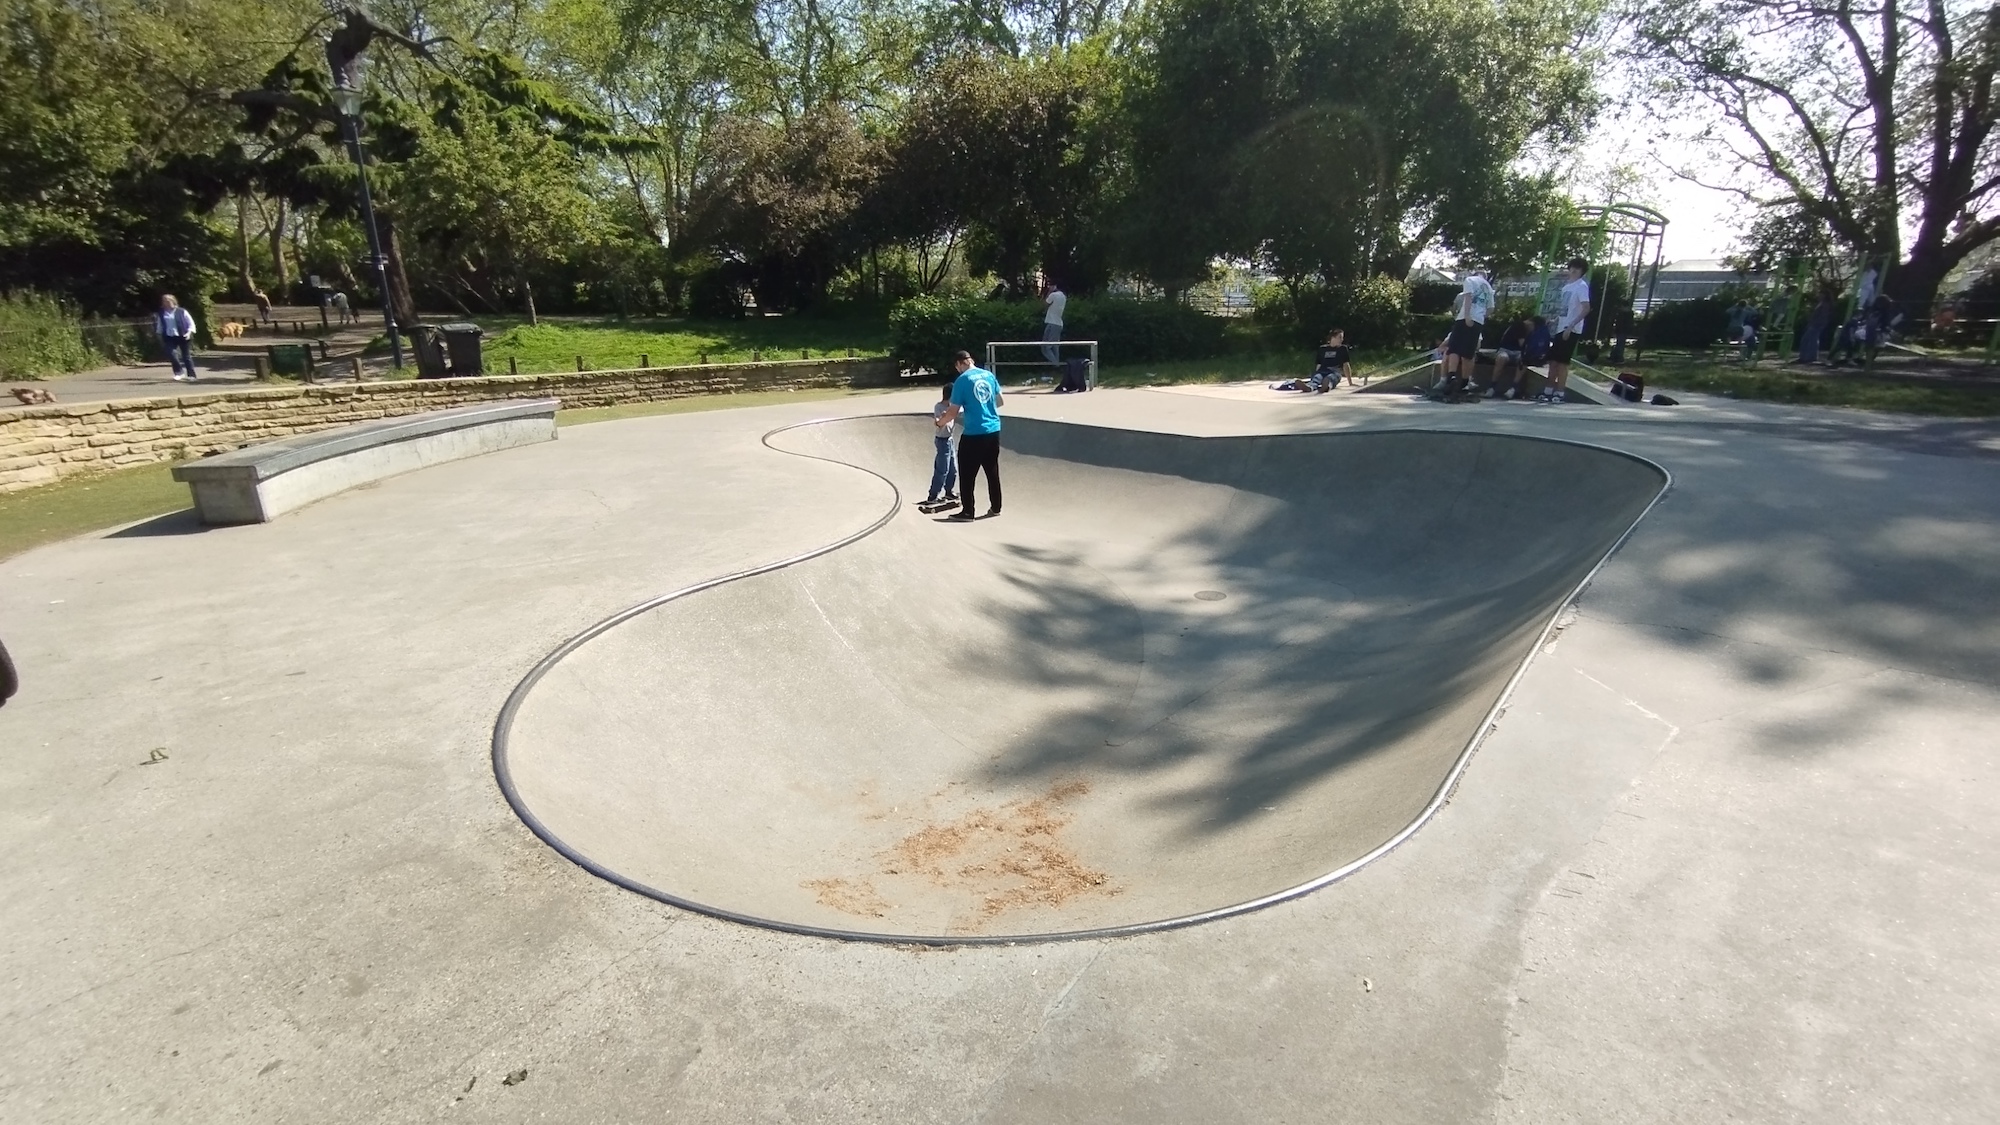 Bishop's skatepark